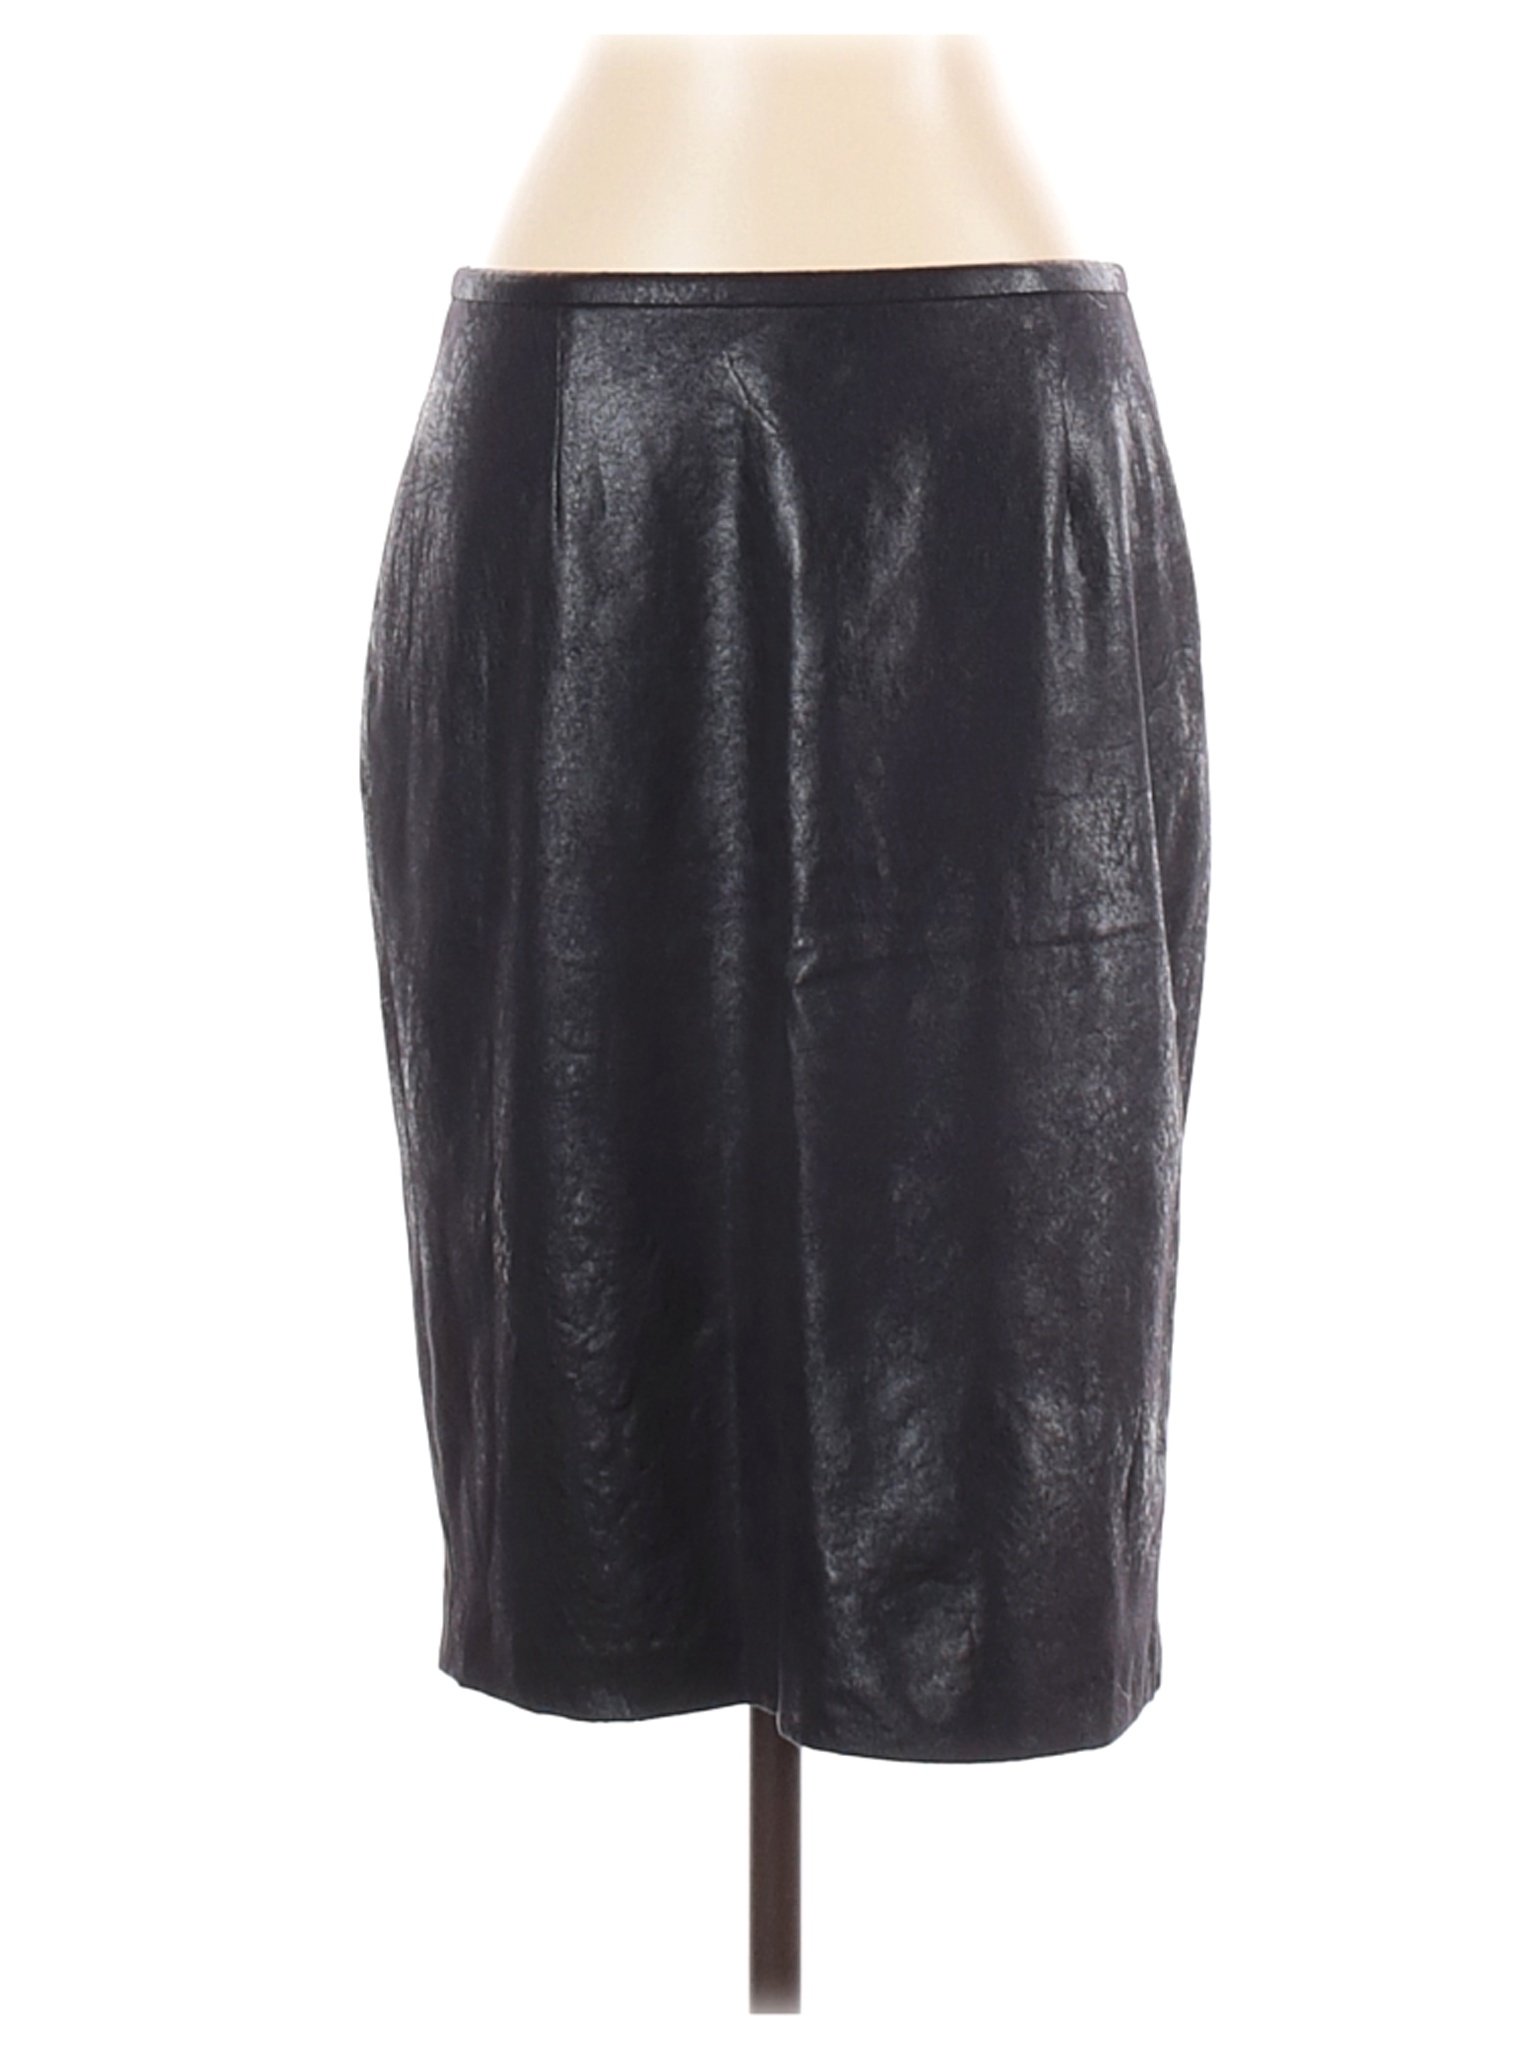 Calvin Klein Women Black Casual Skirt 4 | eBay